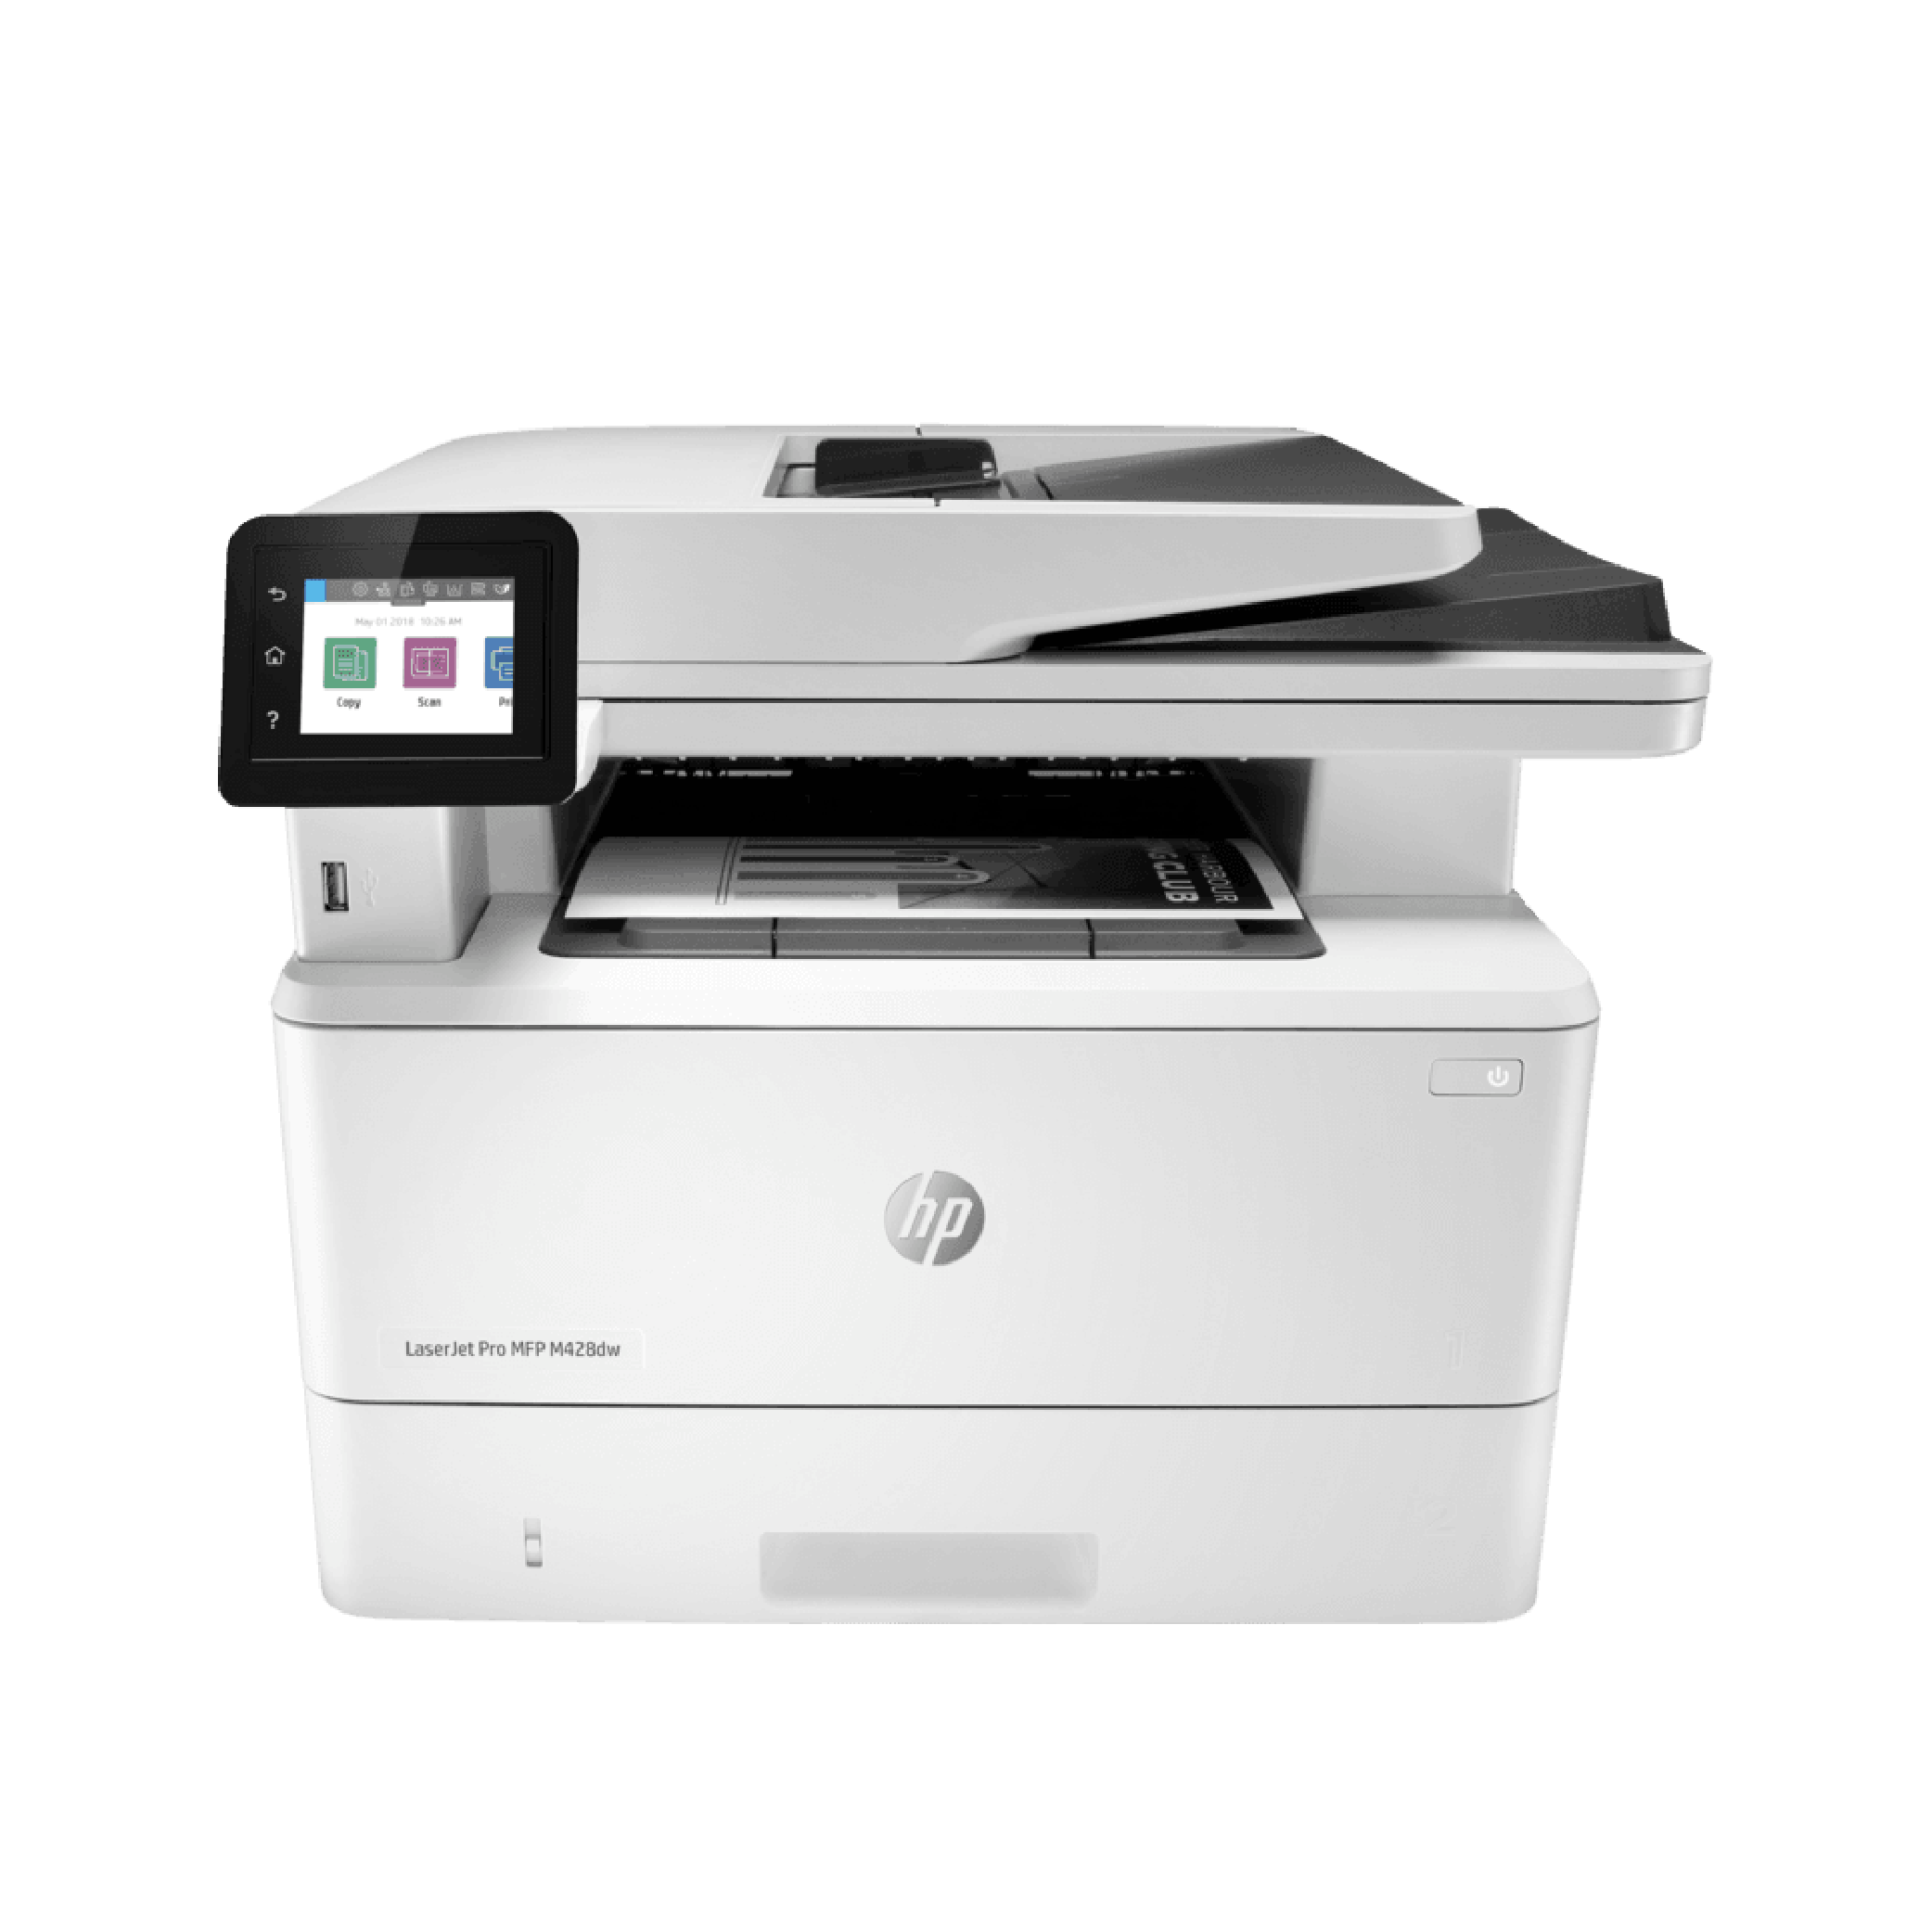 SED International presenta nuevas líneas de impresoras HP dirigidas al canal